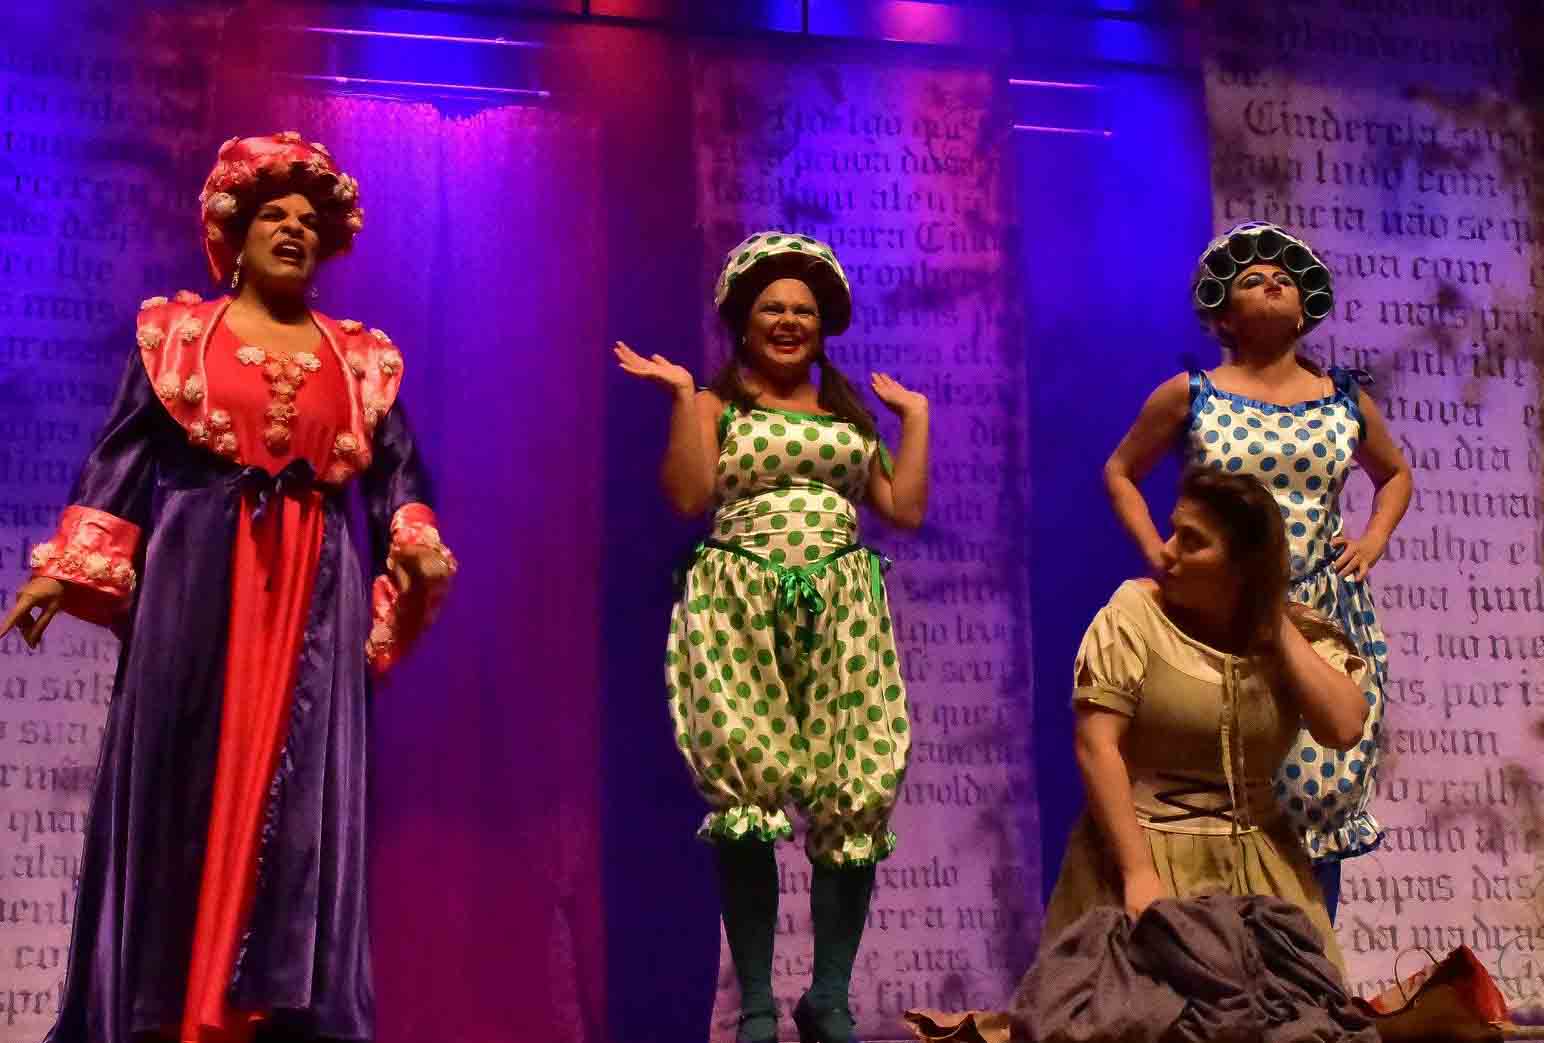 Madrasta (Araíde Rocha), Tãobela (Luciana Riccio), Tãolinda (Raquel Araújo) e Cinderella (Gabriela Carvalho)